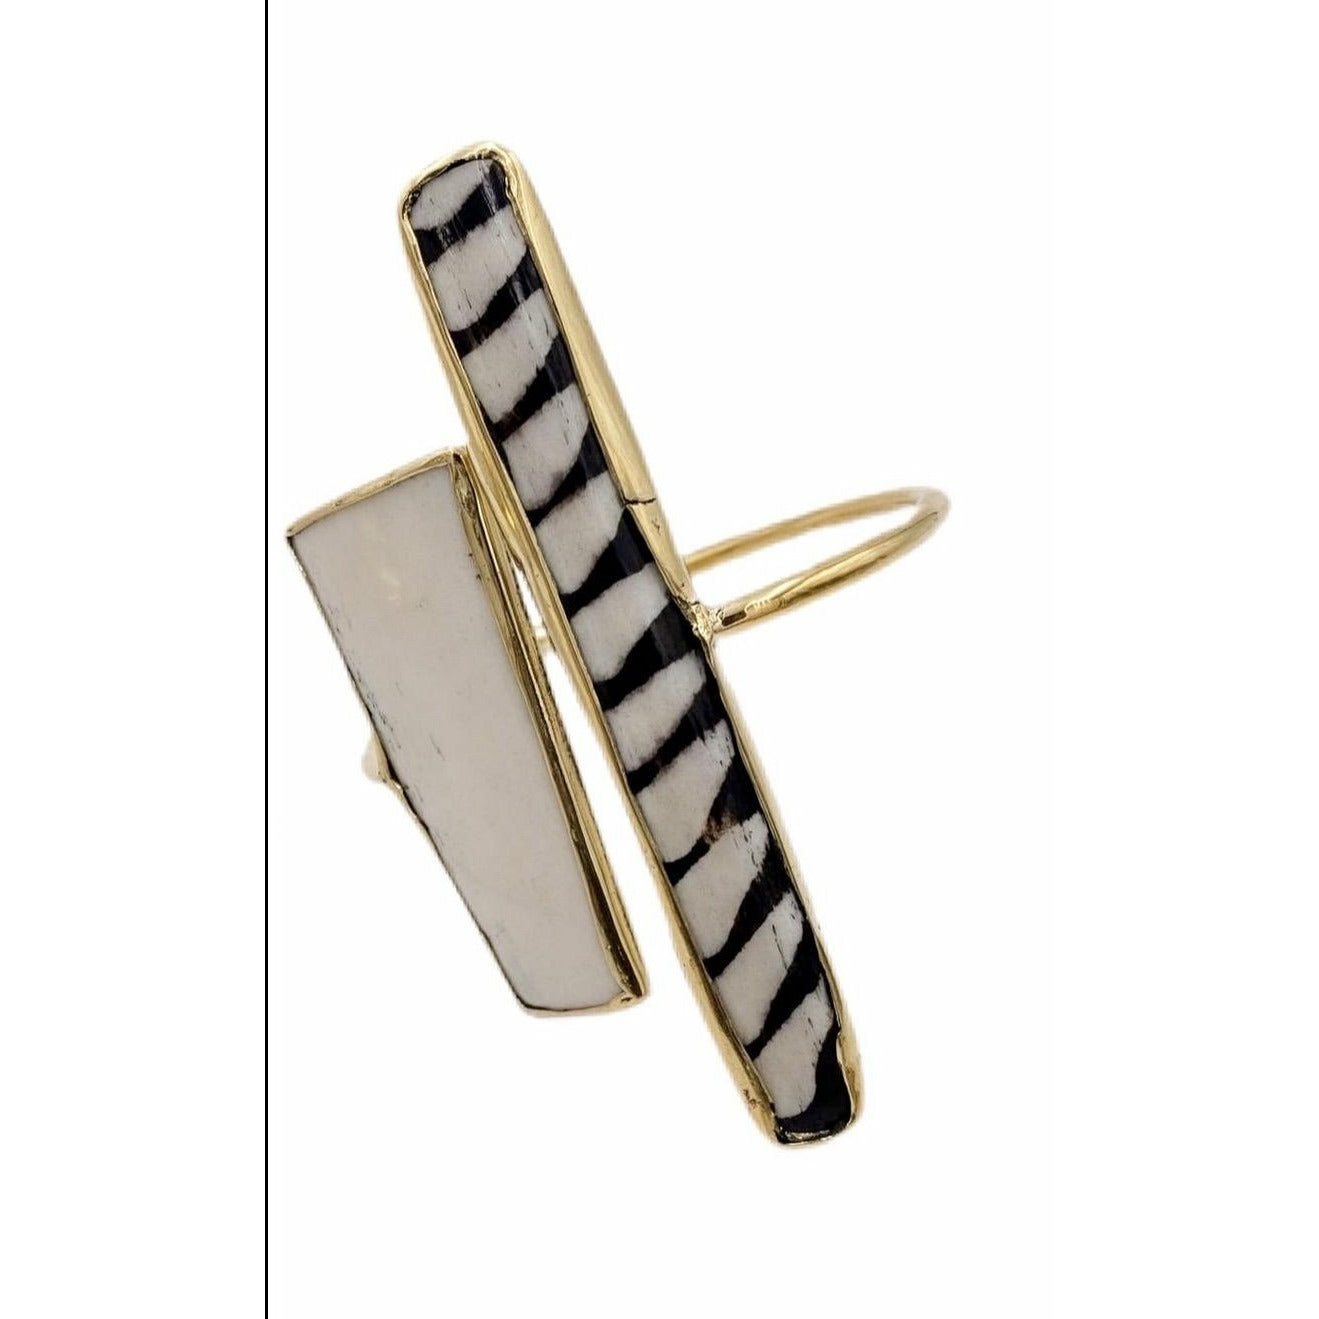 Mofasa Zebra Earrings and Cuffs/bracelet - Trufacebygrace